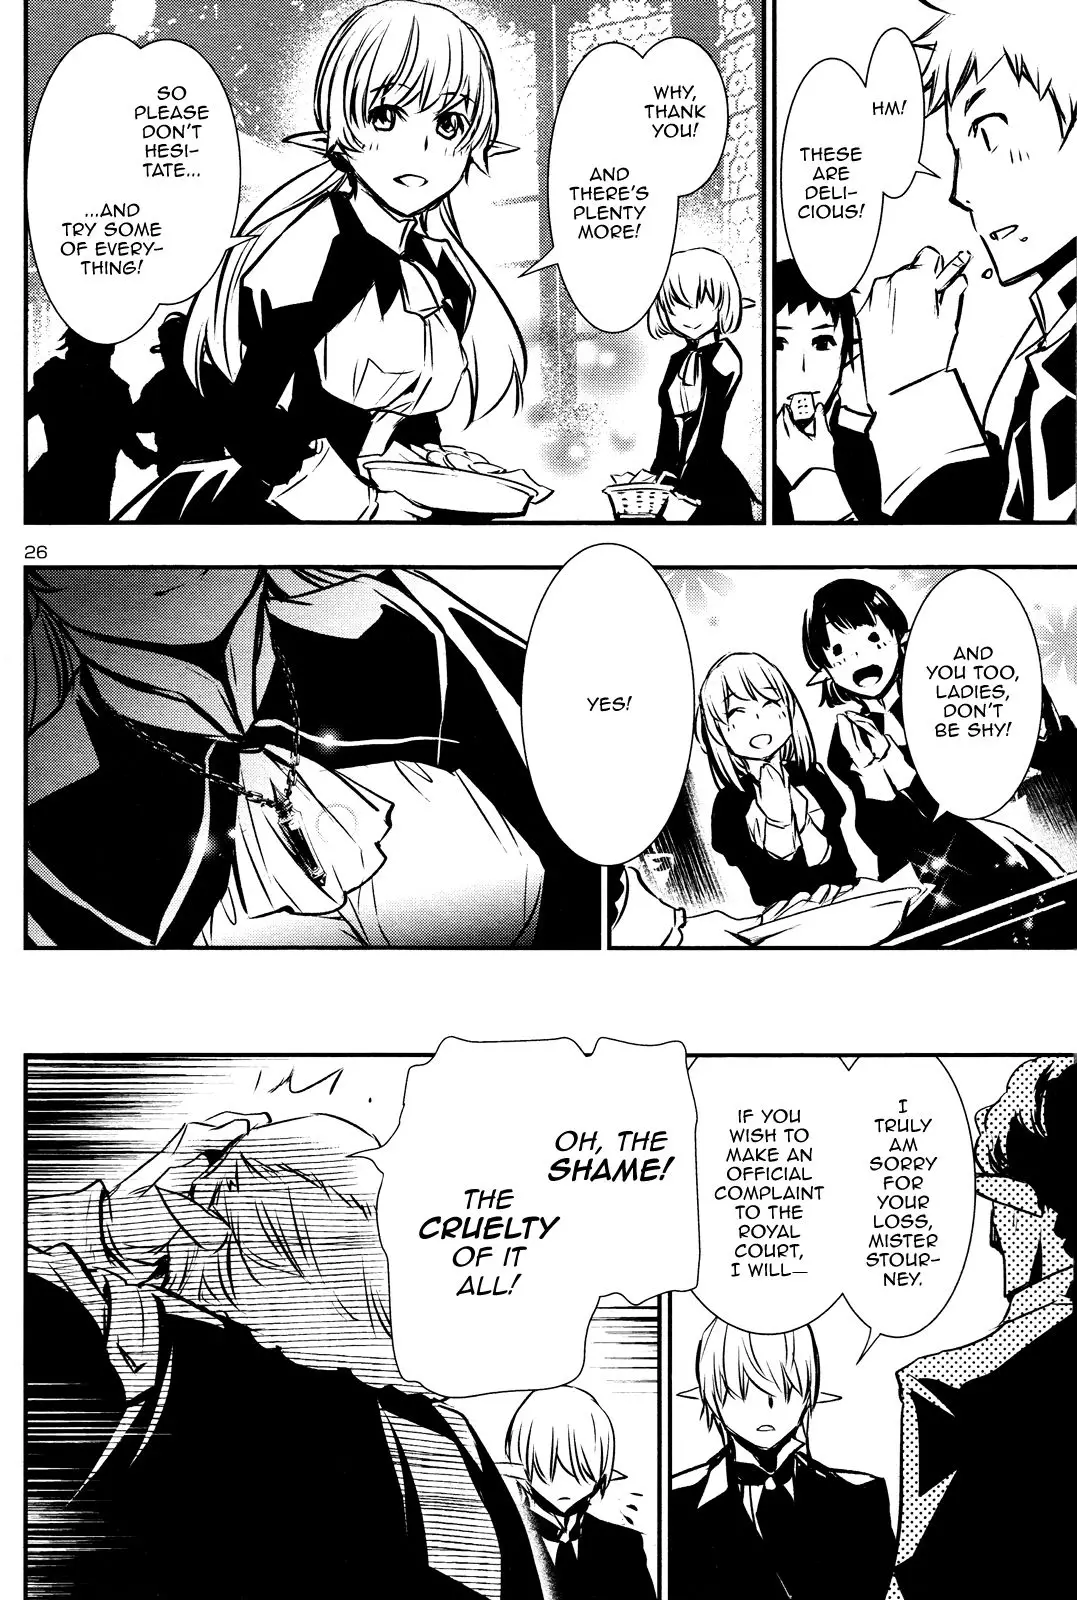 Shinju no Nectar - 40 page 25